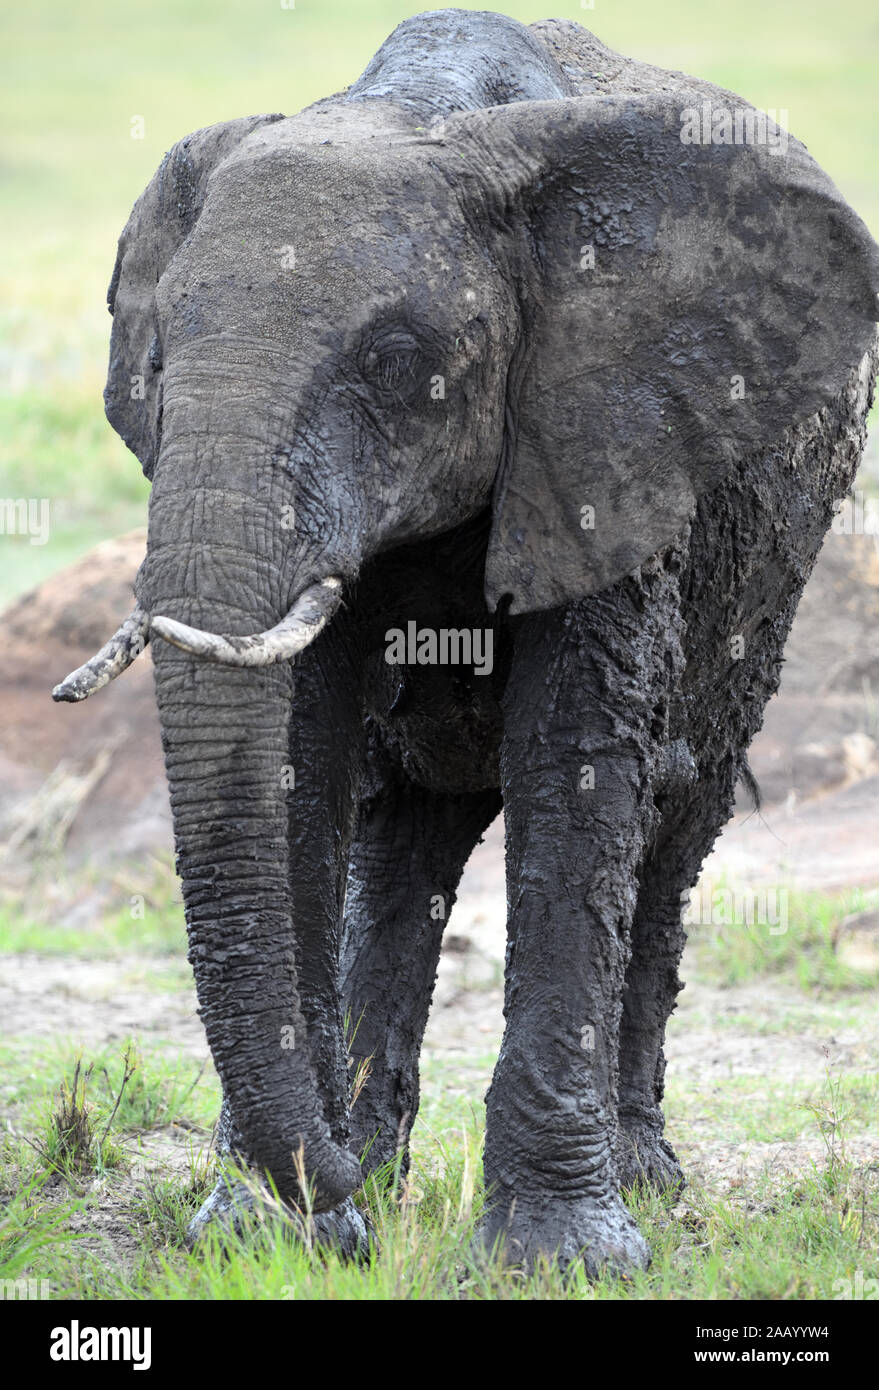 Ein Afrikanischer Elefant (Loxodonta africana), in frischen nassen Schlamm bedeckt, da er eine schlammige Suhlen lässt. . Serengeti National Park, Tansania. Stockfoto